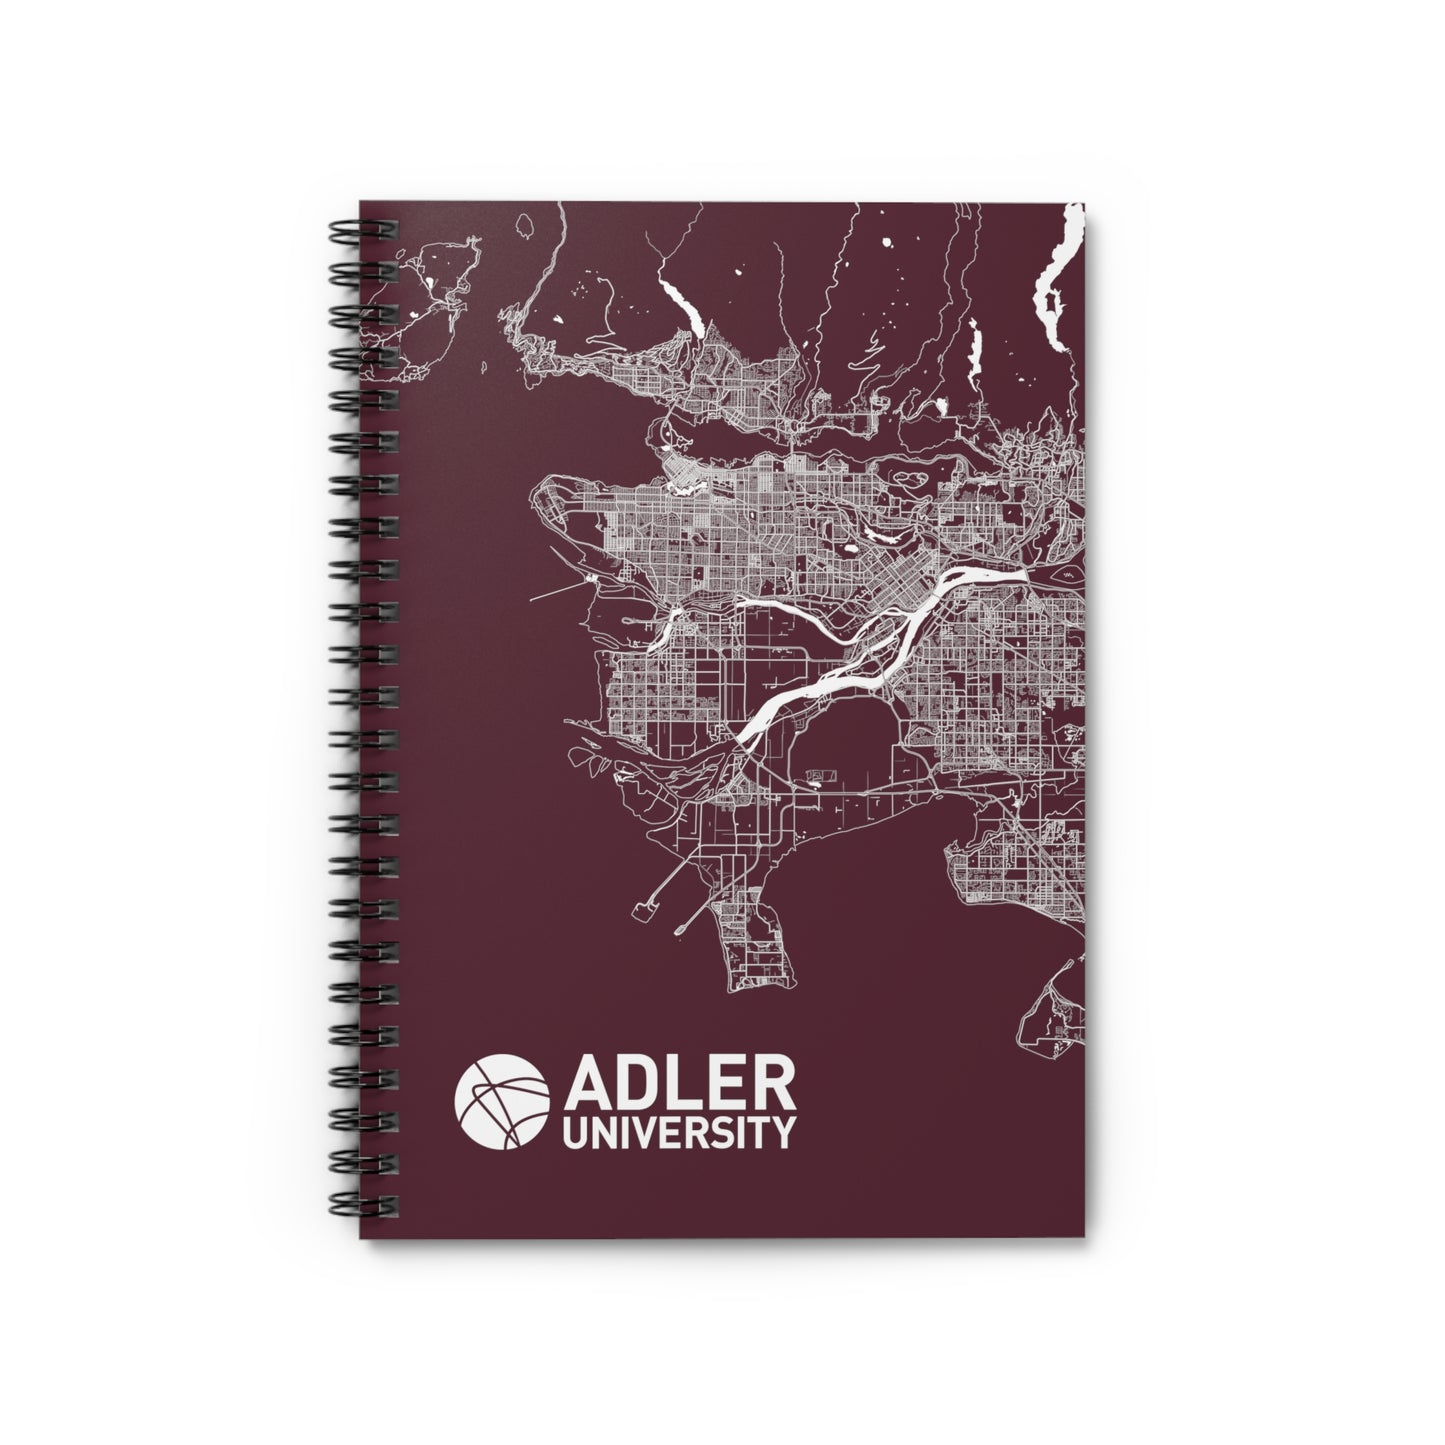 Adler University Vancouver Spiral Notebook - Ruled Line